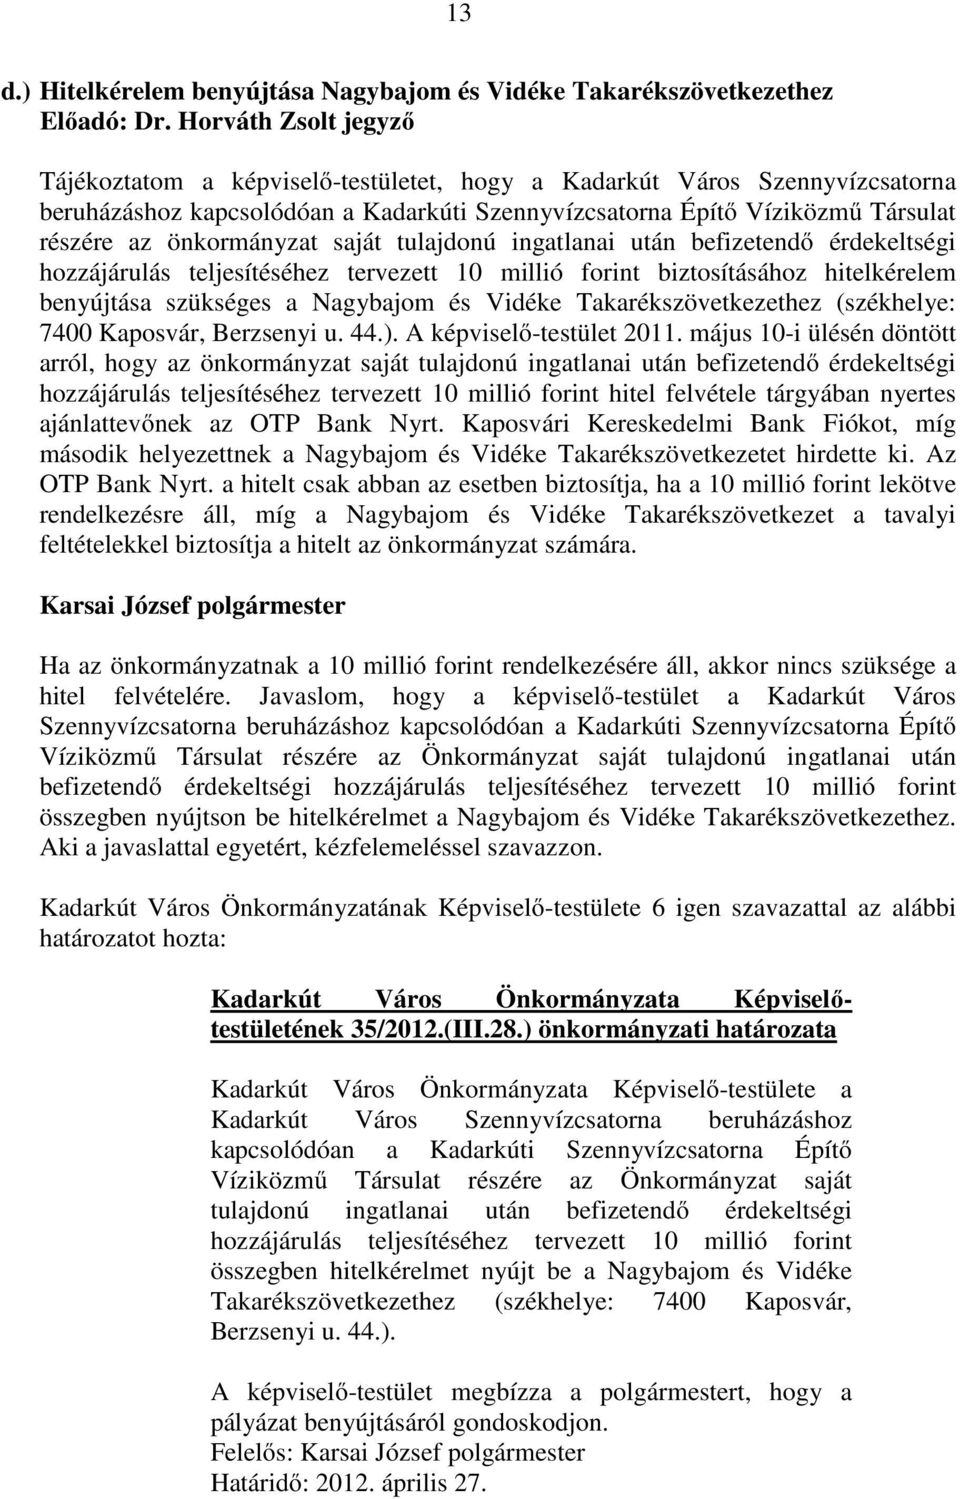 hitelkérelem benyújtása szükséges a Nagybajom és Vidéke Takarékszövetkezethez (székhelye: 7400 Kaposvár, Berzsenyi u. 44.). A képviselı-testület 2011.